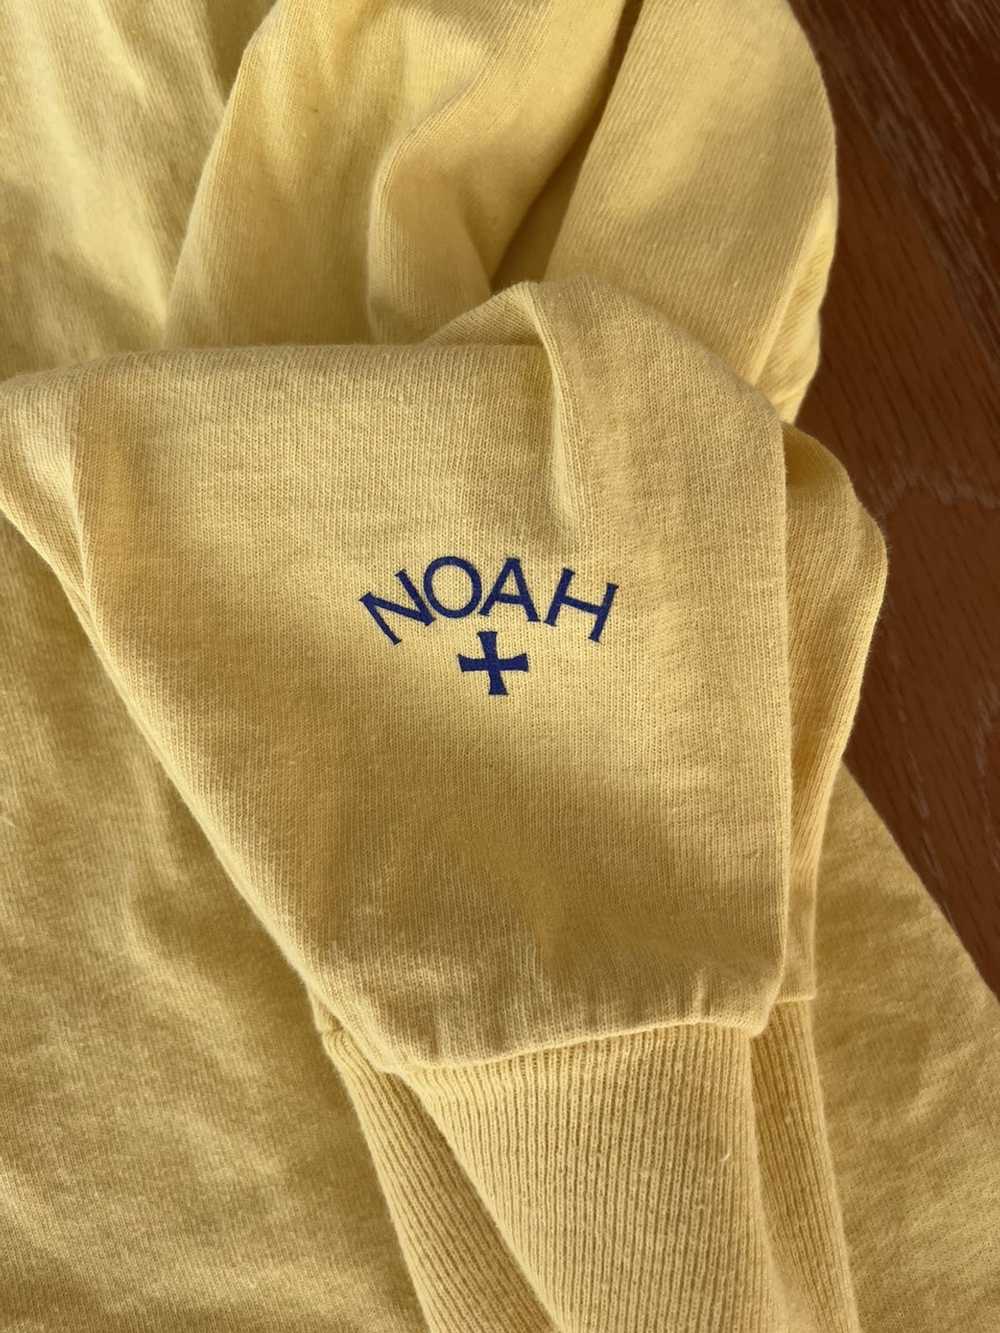 Noah Noah Australia Relief L/S - image 5